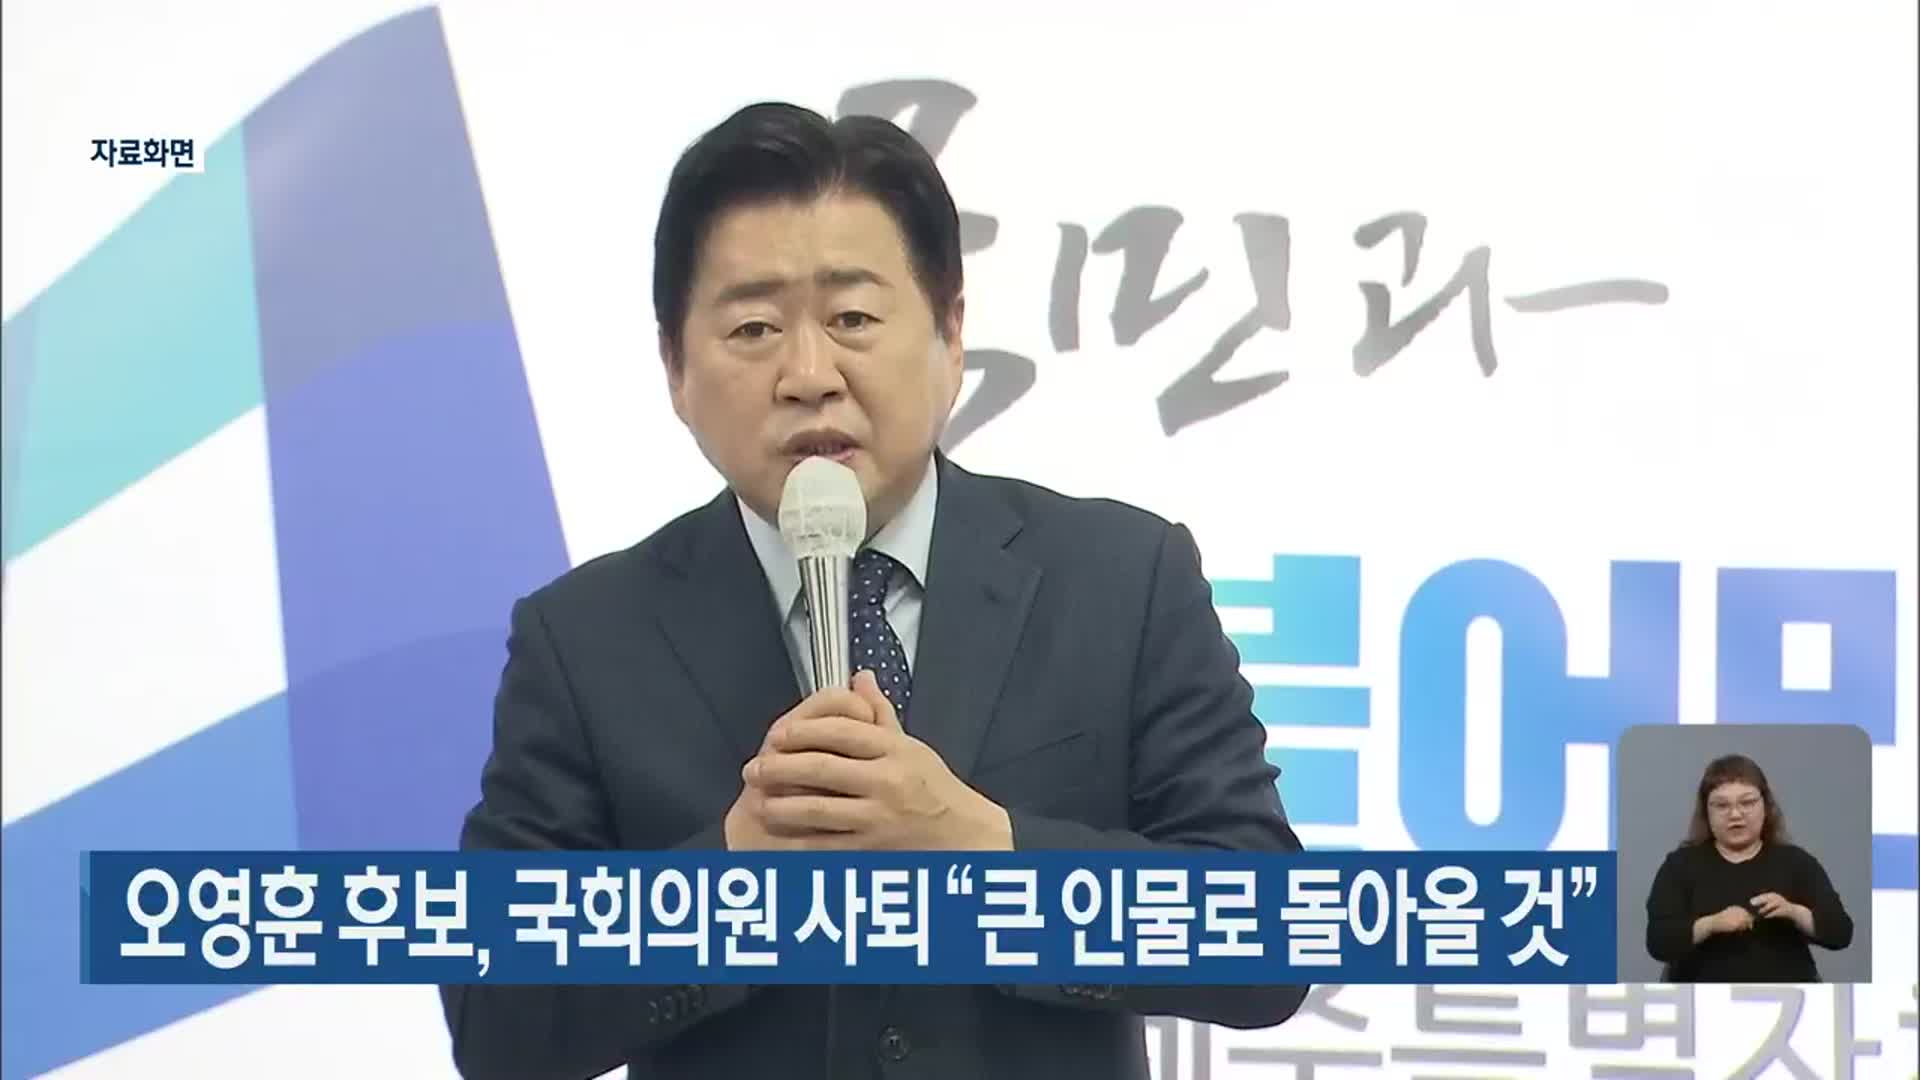 오영훈 후보, 국회의원 사퇴 “큰 인물로 돌아올 것”